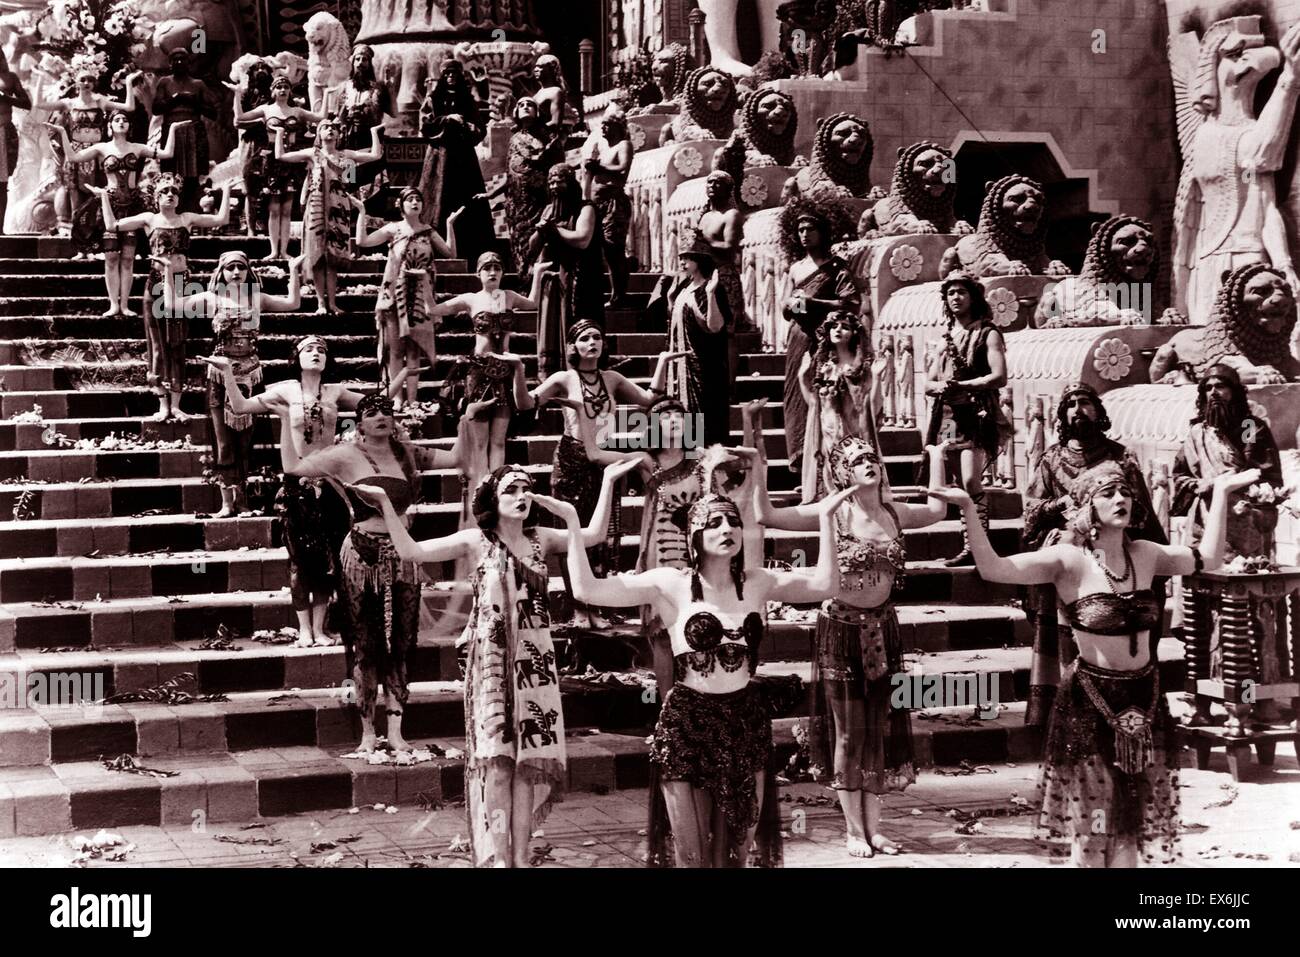 Intoleranz (Film), ein 1916 Film von d.w. Griffith. Szene aus einer babylonischen Geschichte: der Rückgang des babylonischen Reiches nach Persien 539 v. Chr. Stockfoto